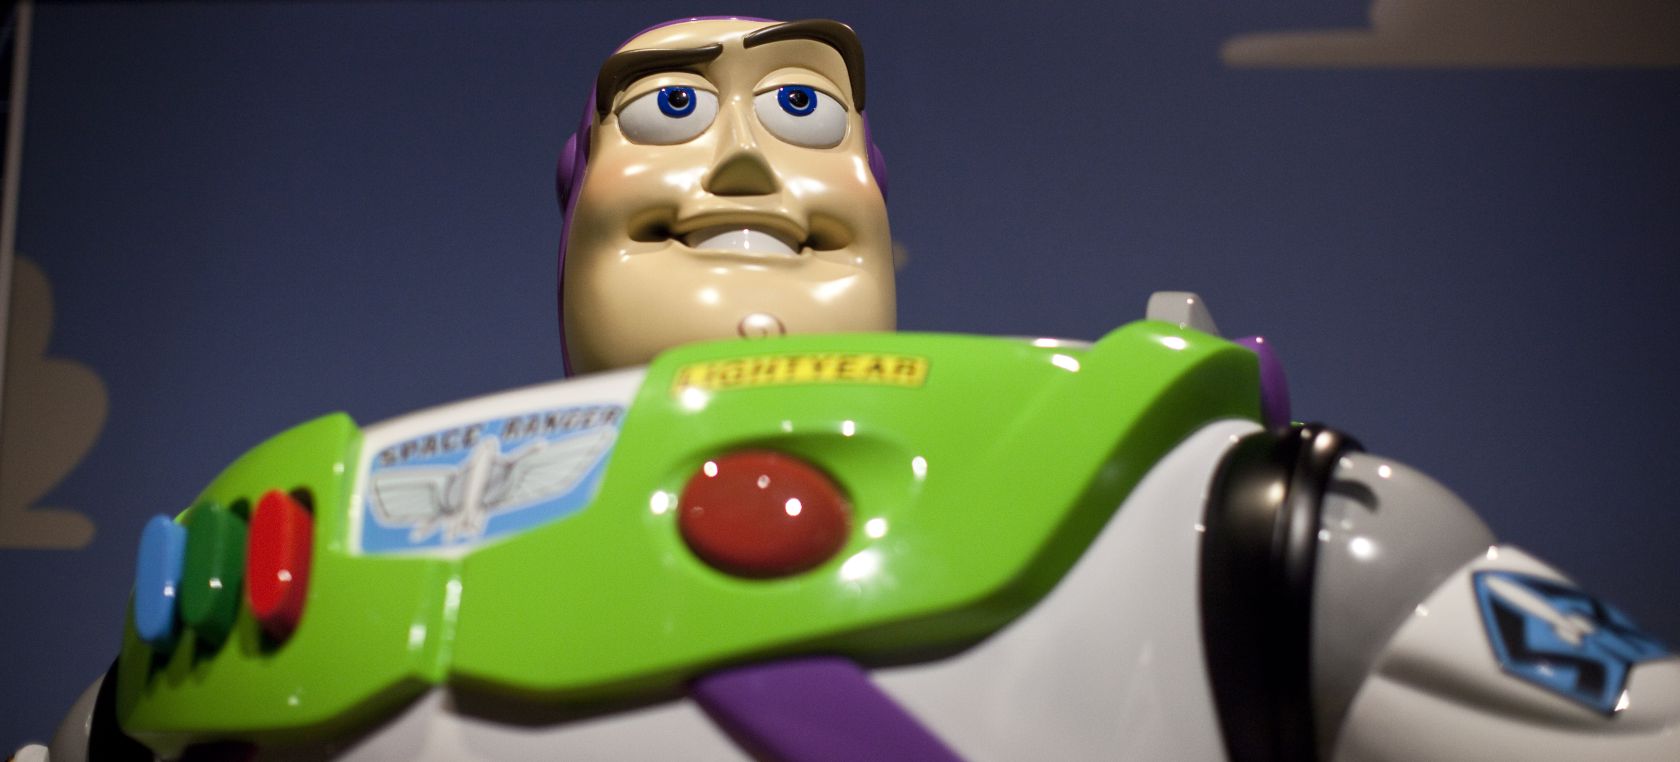 Primer tráiler de ‘Lightyear’, la película sobre Buzz Lightyear de Pixar para Disney